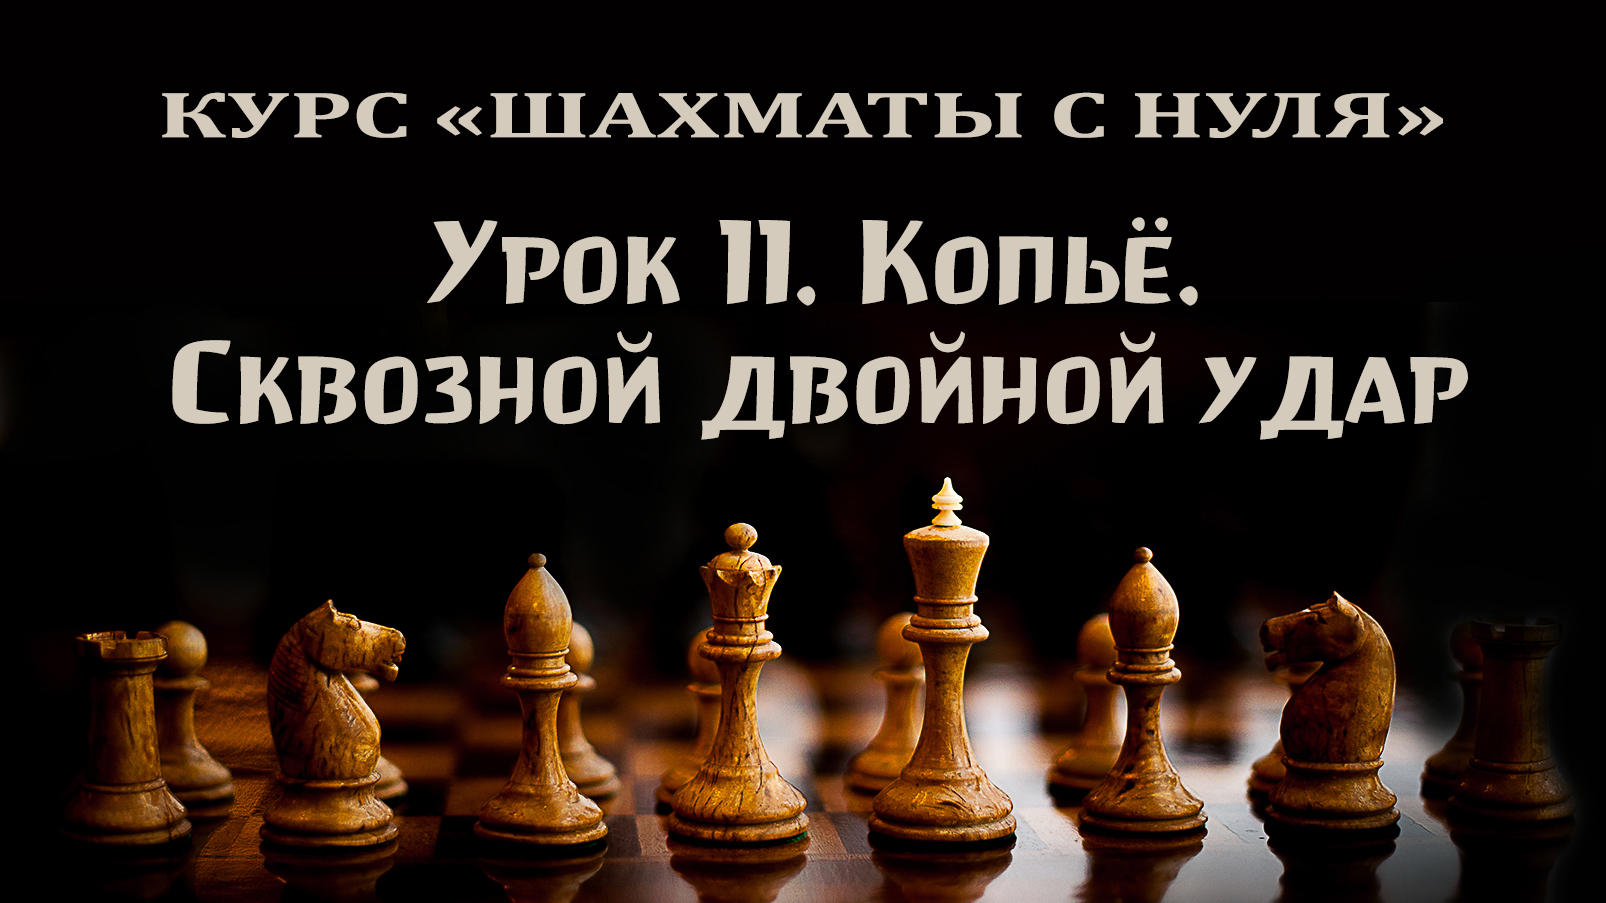 Урок 11. Сквозной двойной удар. "Копьё". Курс для начинающих шахматистов